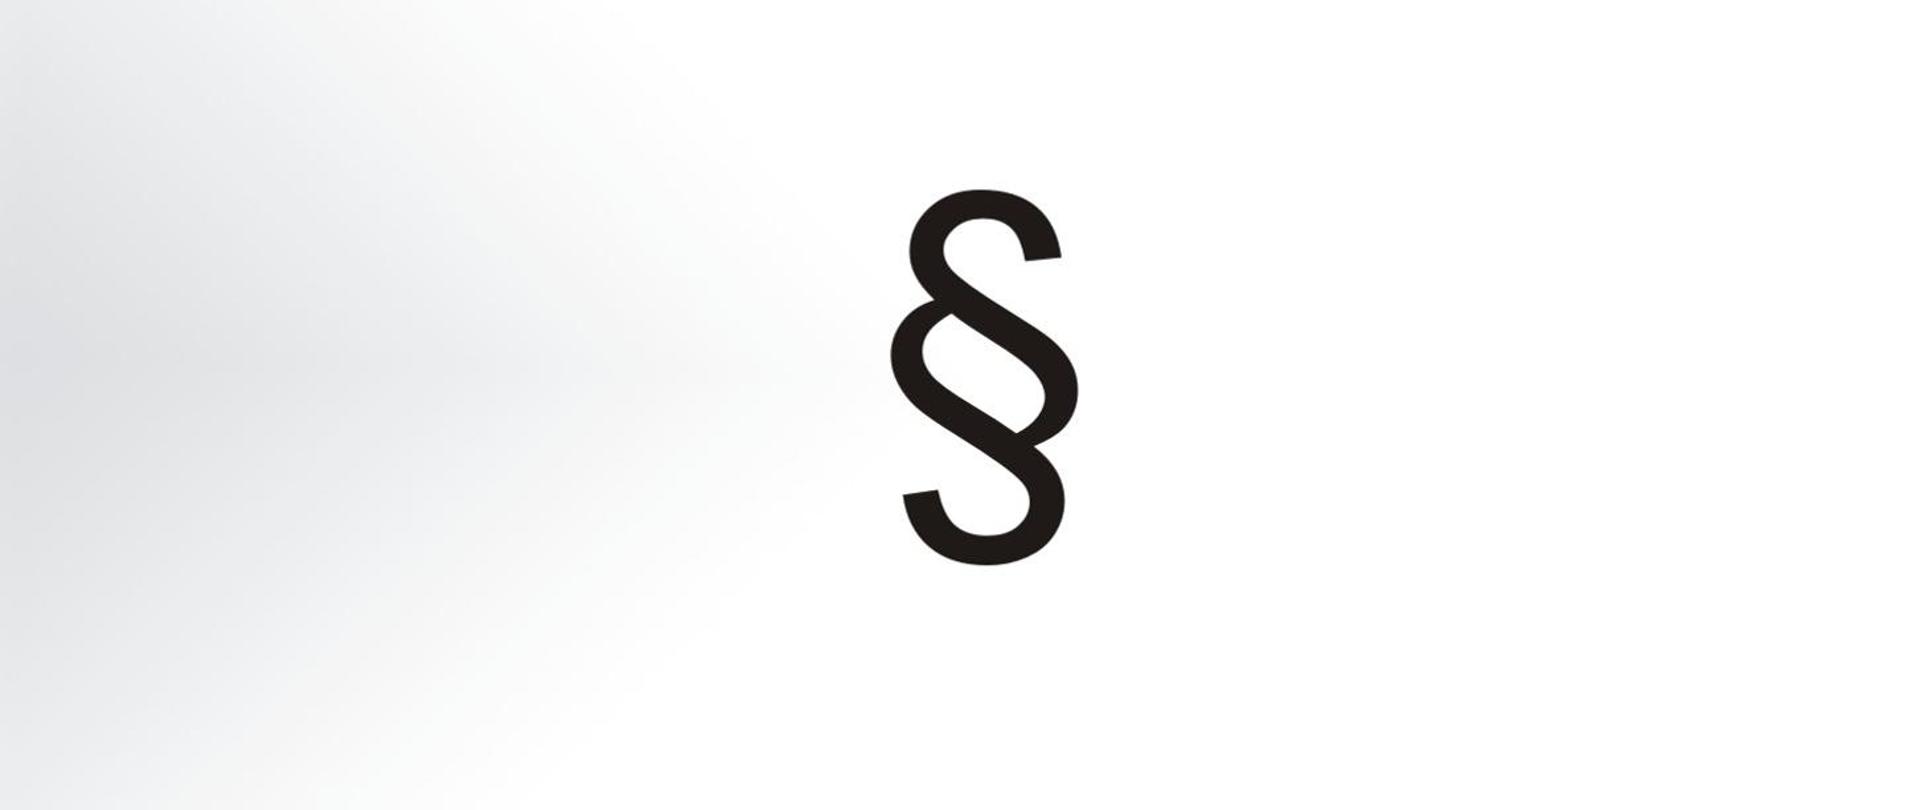 Zdjęcie przedstawia symbol podstawowej jednostki redakcyjnej tekstu prawnego